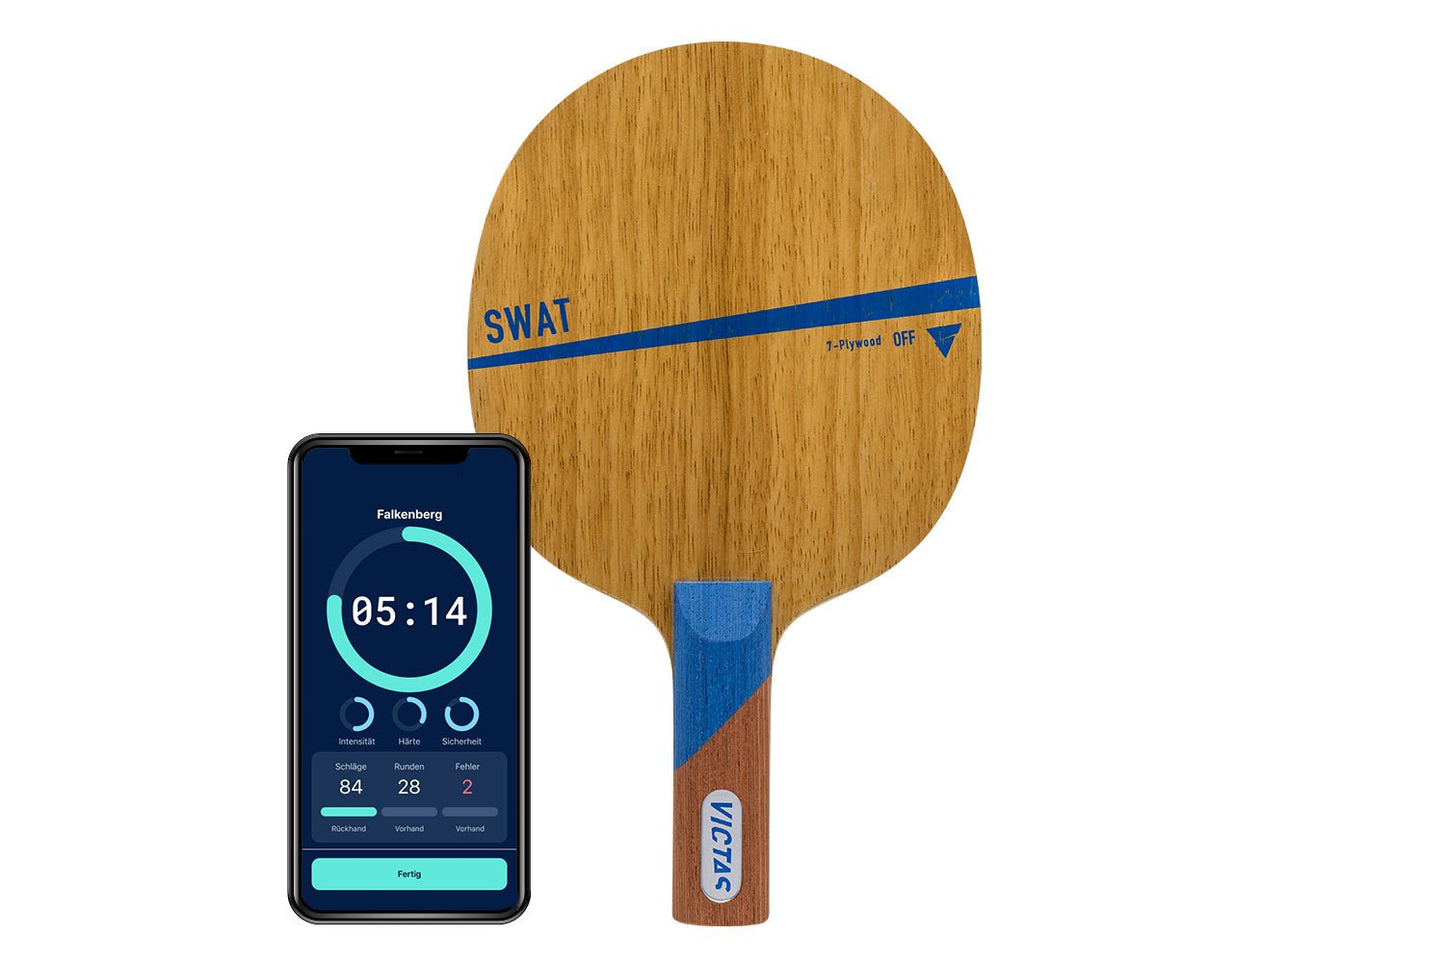 Victas Swat Tischtennisschläger mit geradem Griff und Smartphone zeigt Daten des Schlägers vor weißem Hintergrund